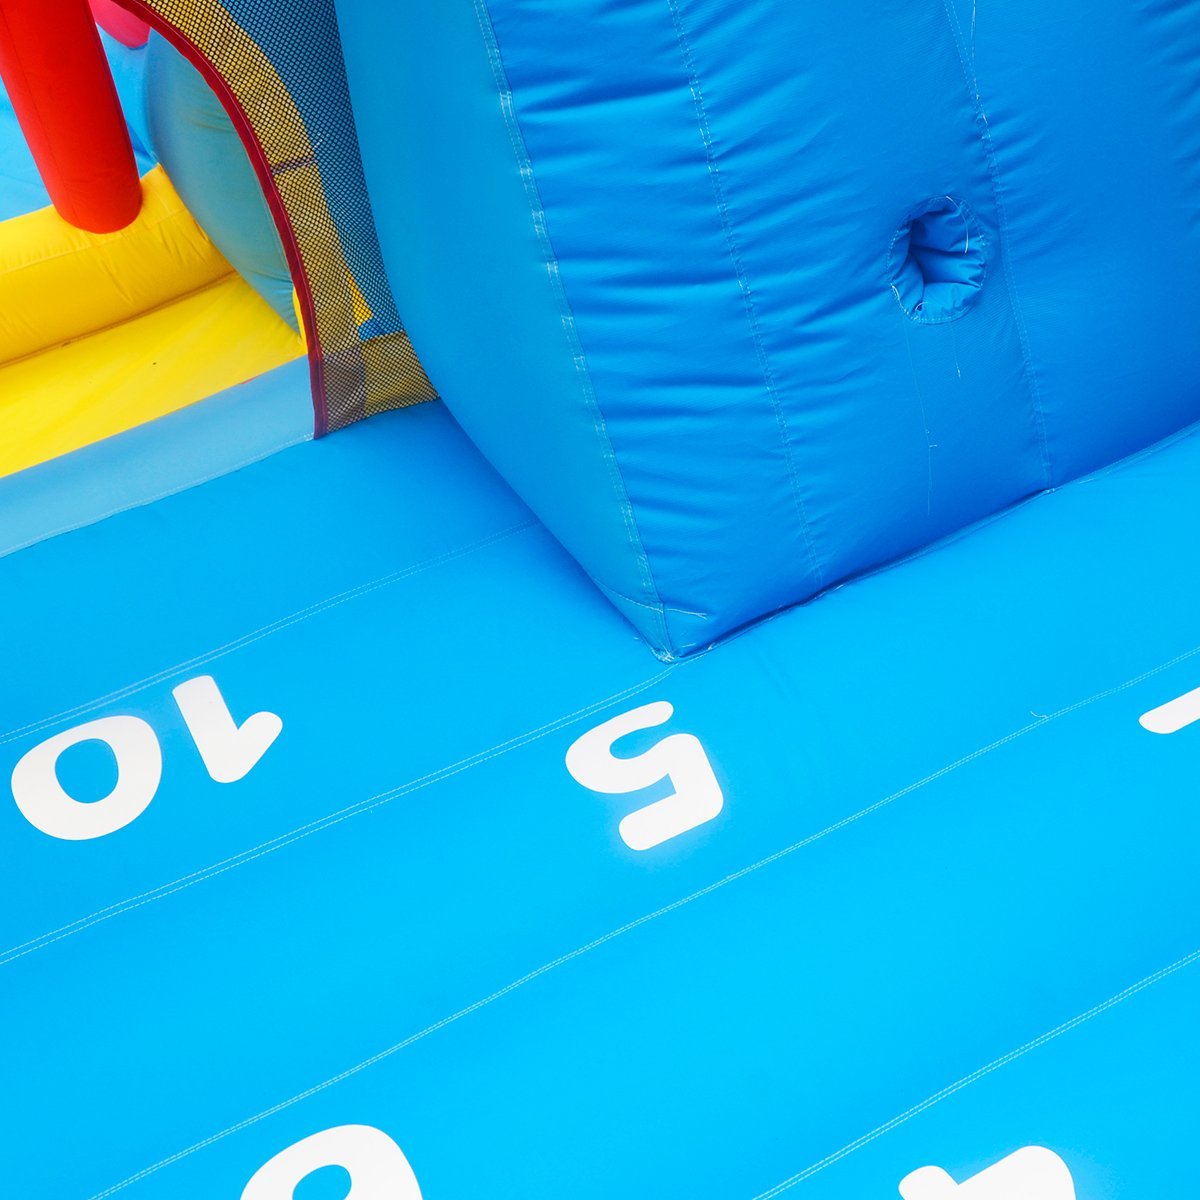 Lifespan Kids Bouncefort Plus Inflatable Castle